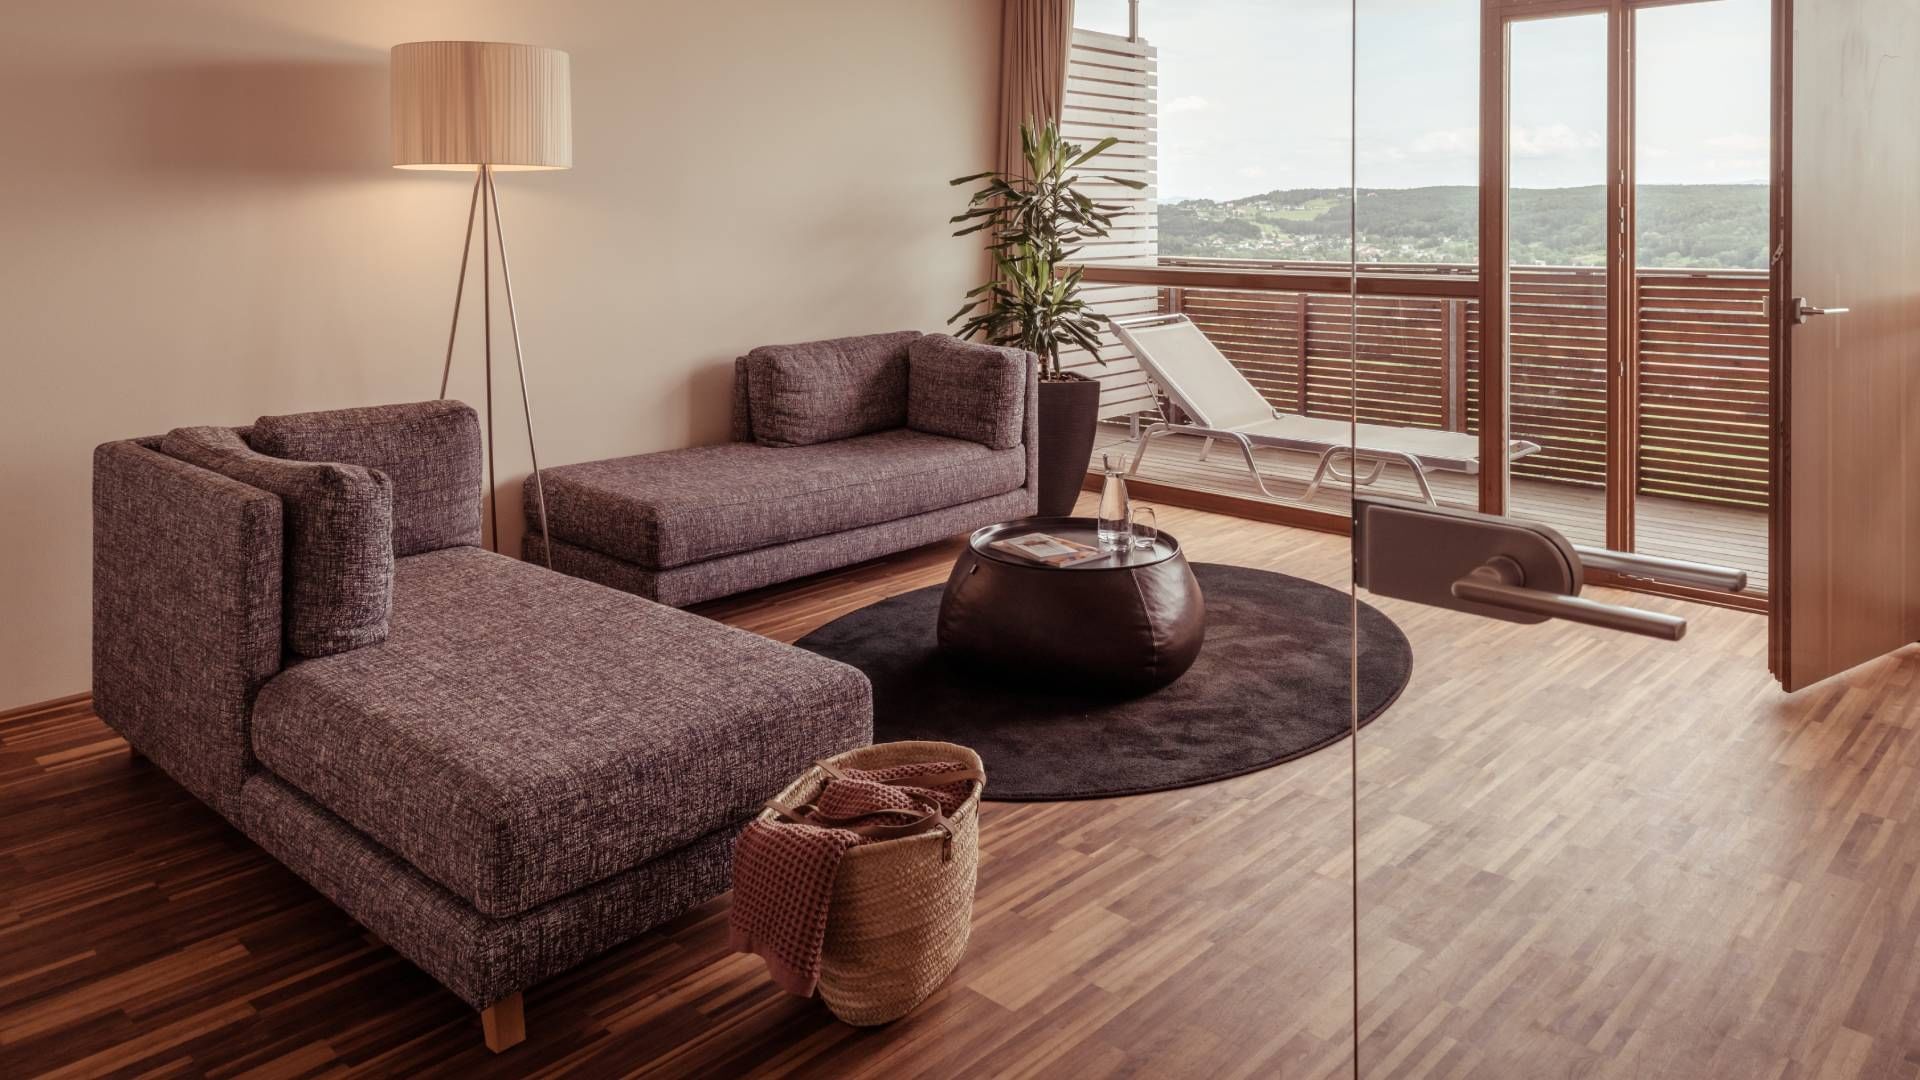 Lounge in Spa Suite with Sauna at Falkensteiner Balance Resort